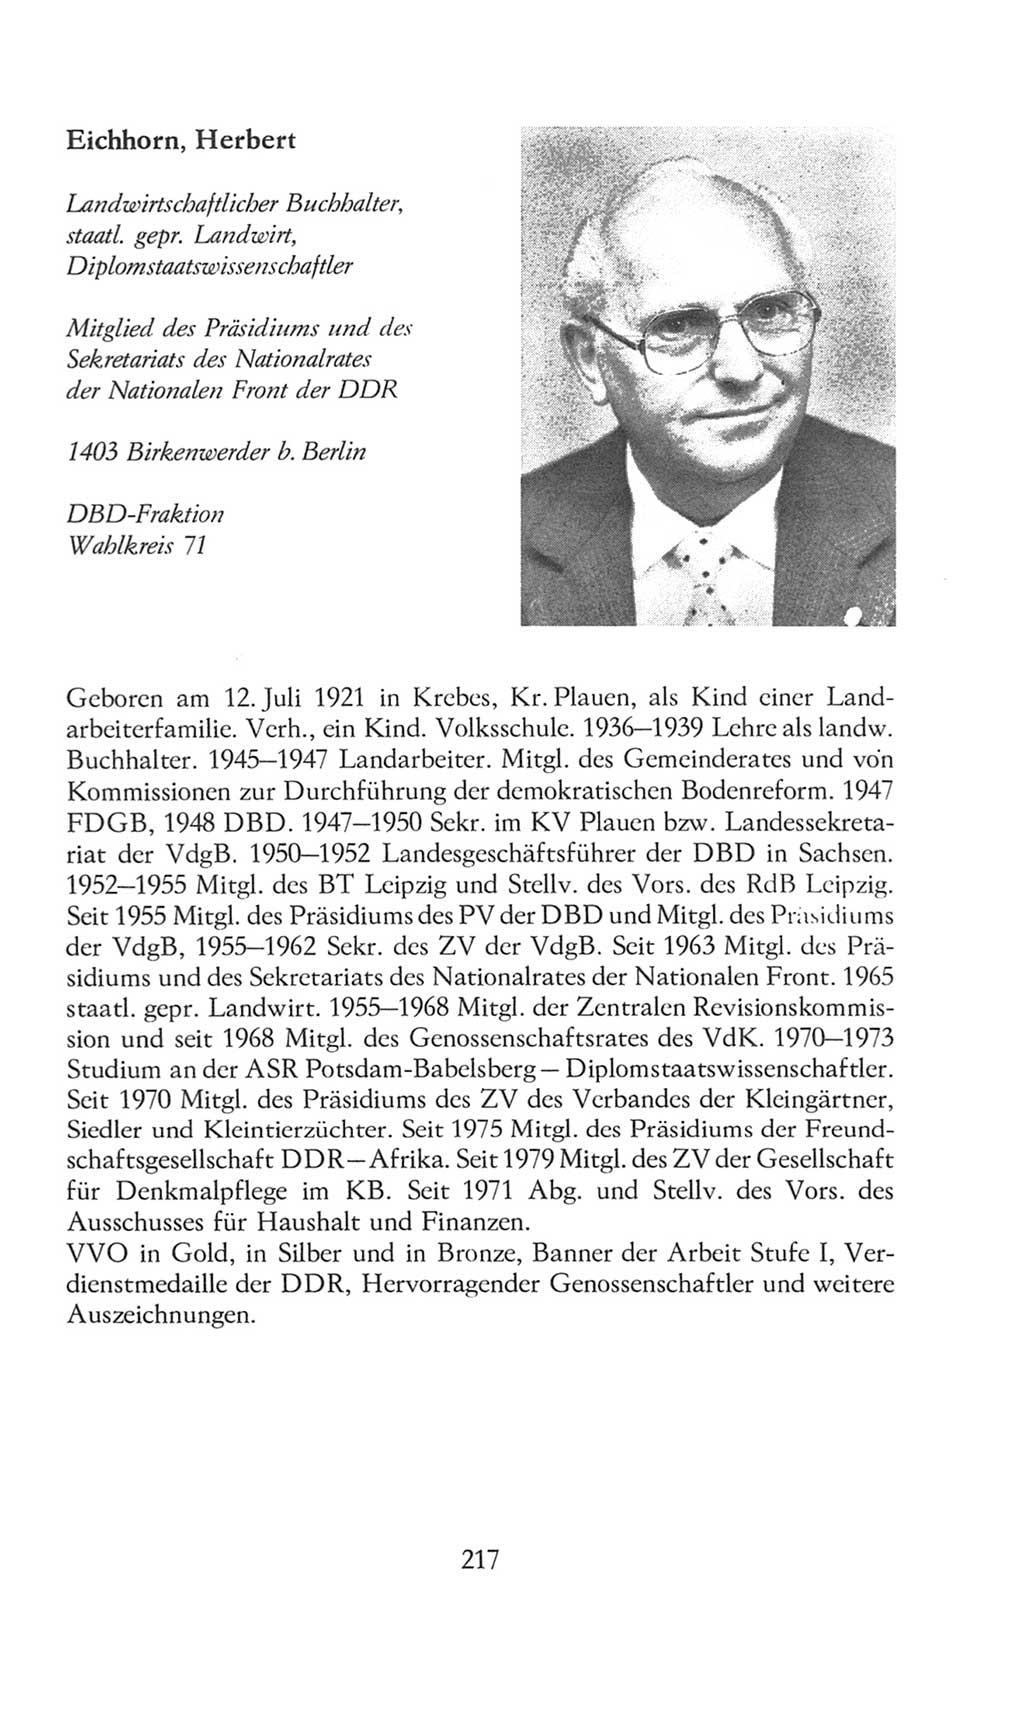 Volkskammer (VK) der Deutschen Demokratischen Republik (DDR), 8. Wahlperiode 1981-1986, Seite 217 (VK. DDR 8. WP. 1981-1986, S. 217)